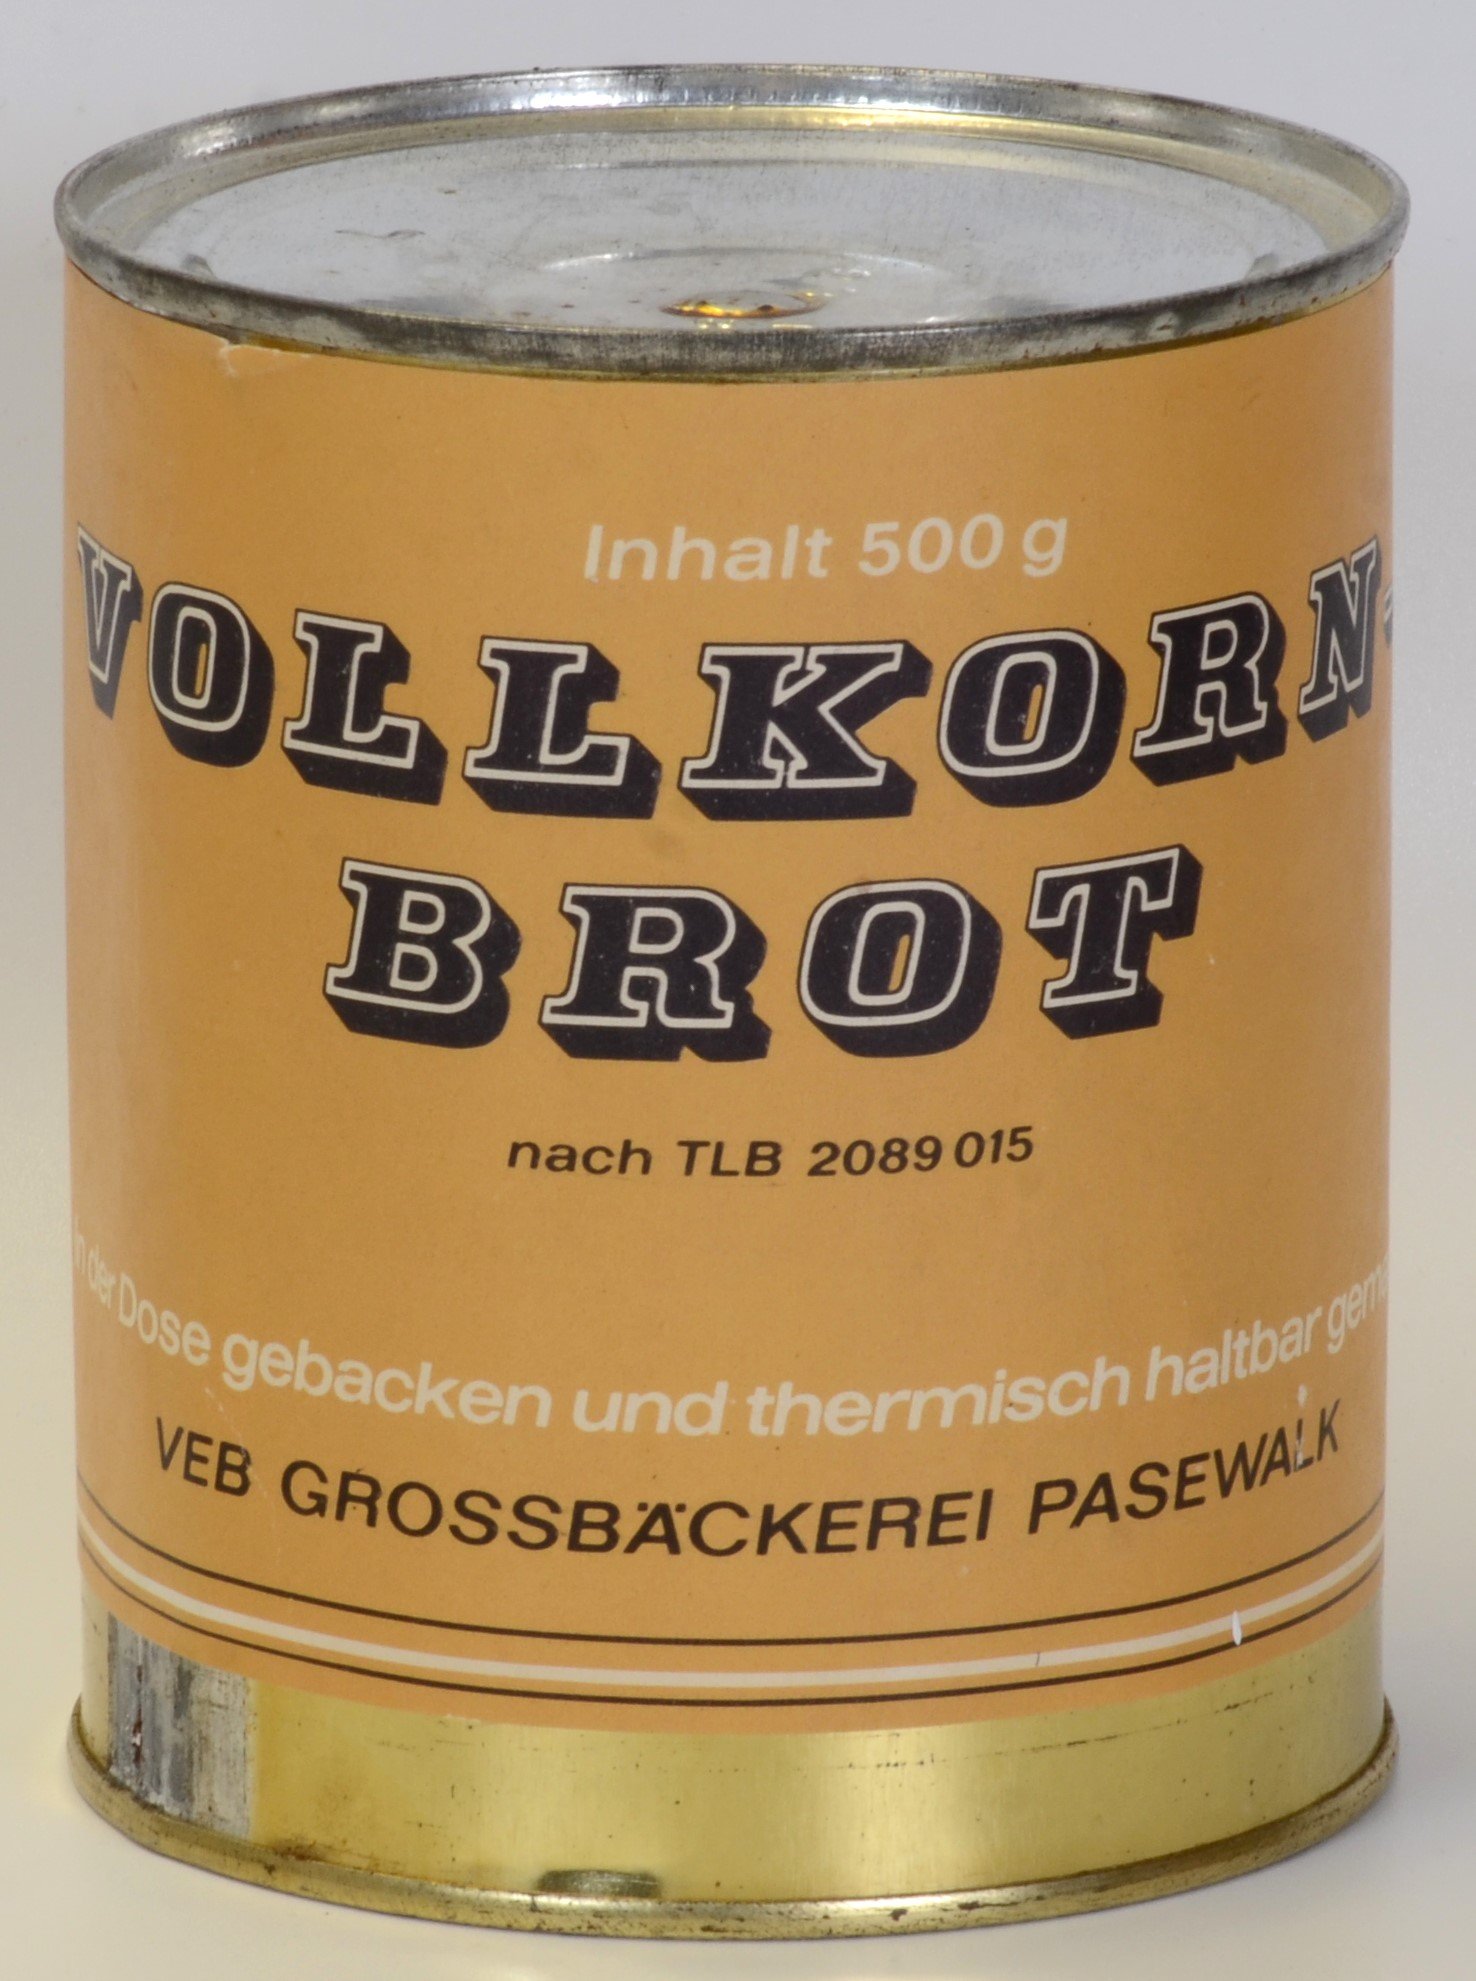 Konserve der VEB Grossbäckerei Pasewalk mit Vollkornbrot (DDR Geschichtsmuseum im Dokumentationszentrum Perleberg CC BY-SA)